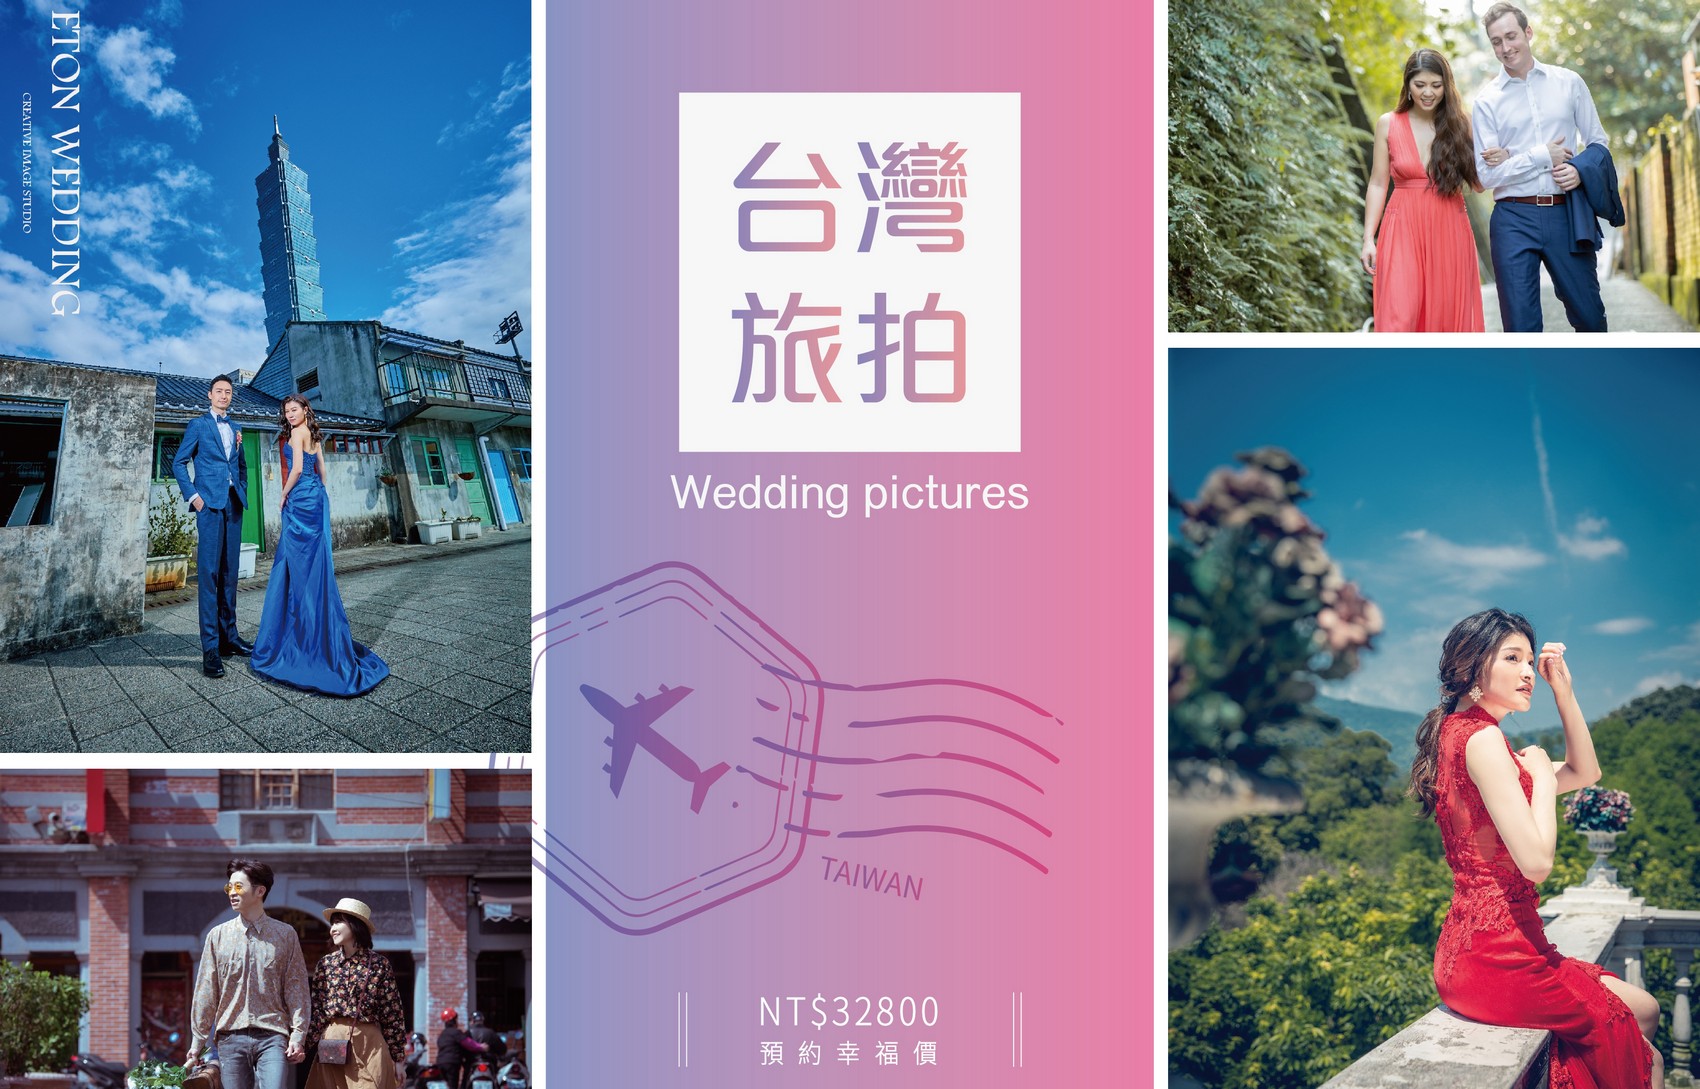 台灣 婚紗工作室,台灣 婚紗攝影價格,花蓮拍婚紗,花蓮 婚紗攝影,花蓮 婚紗工作室